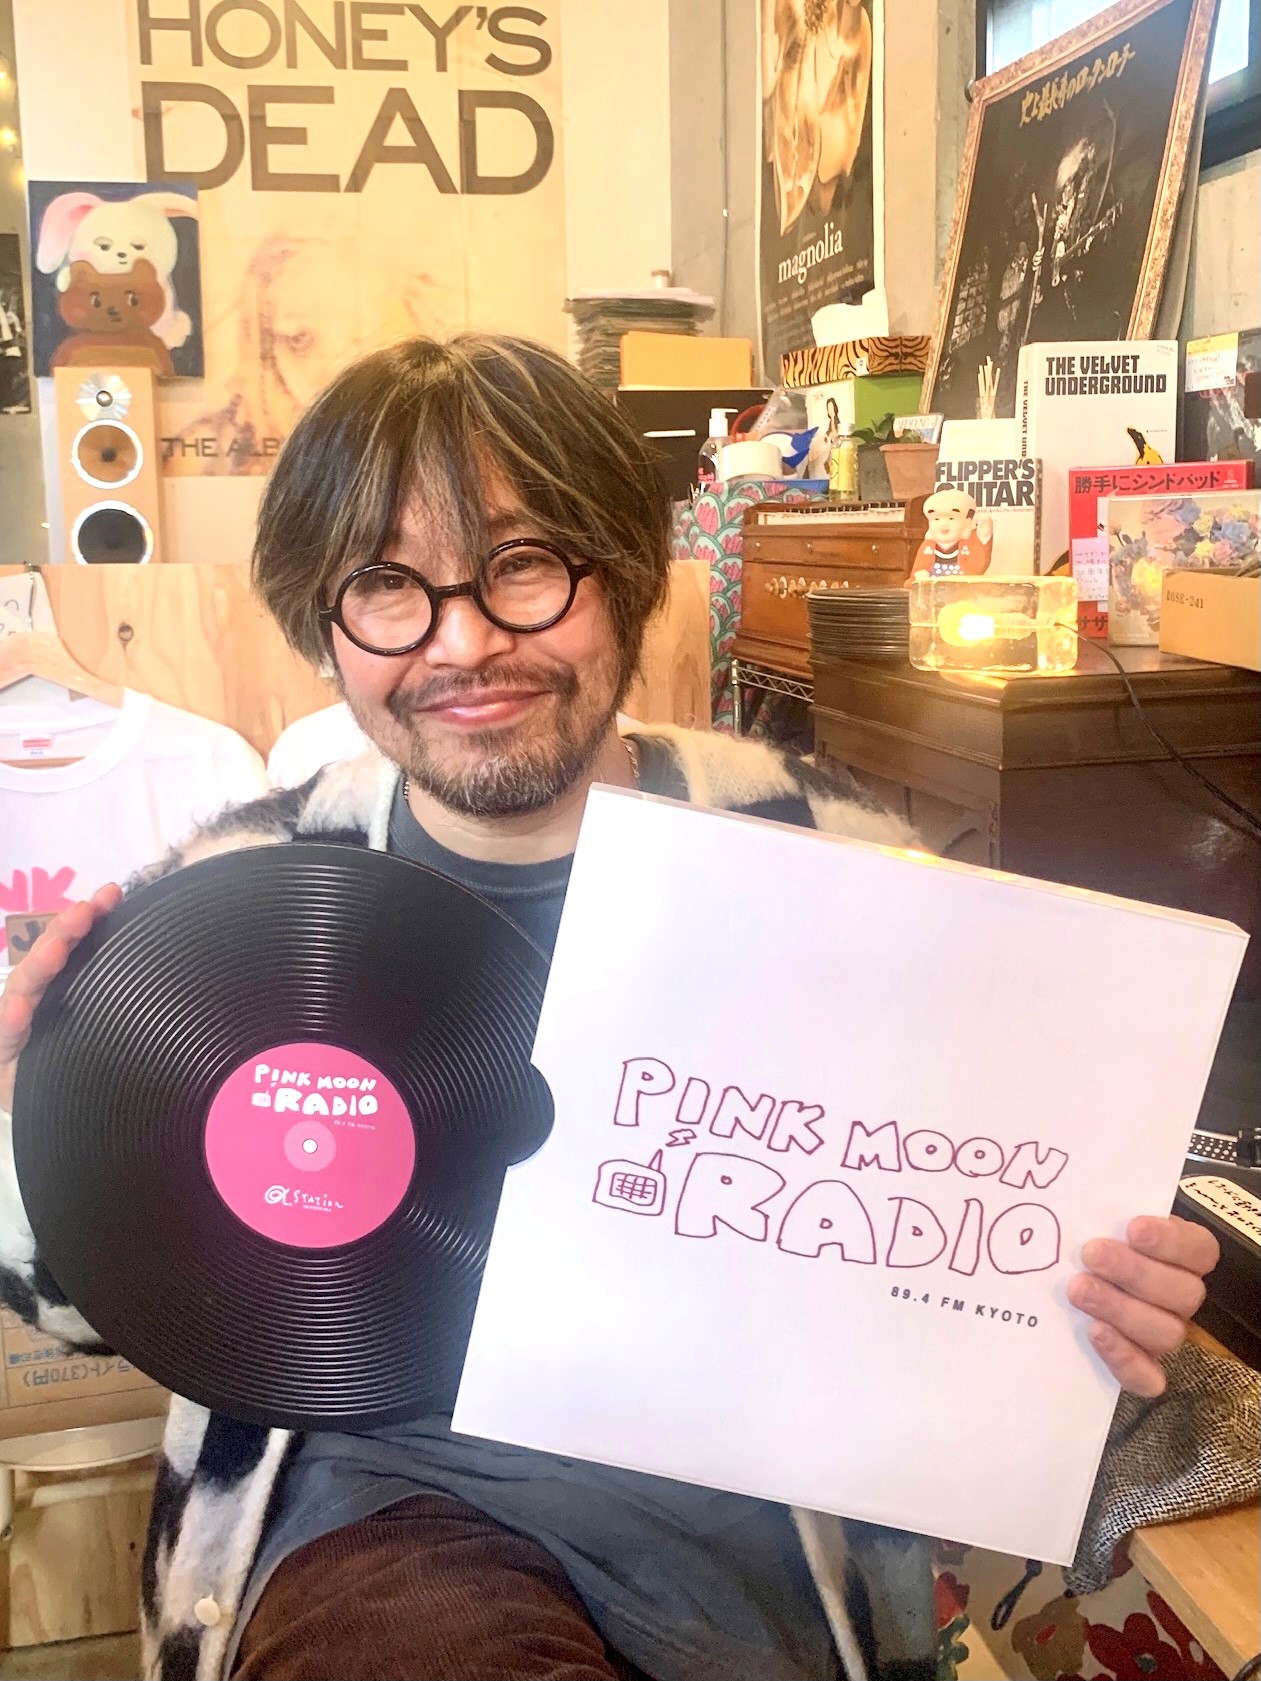 曽我部恵一 the best of keiichi sokabe LP レコード - レコード